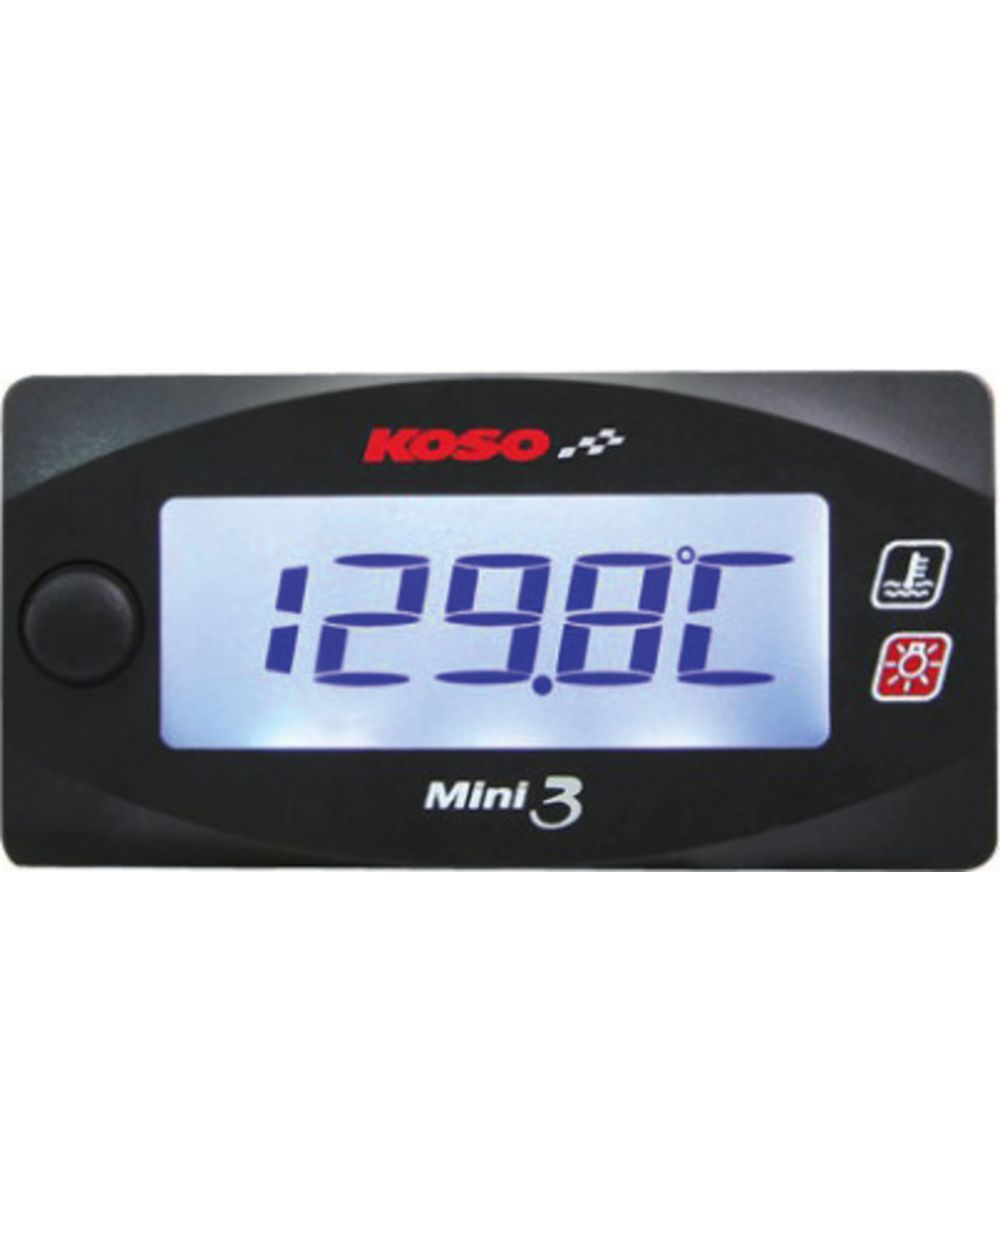 Thermomètre digital KOSO, rétro-éclairé, 2 capteurs inclus pour